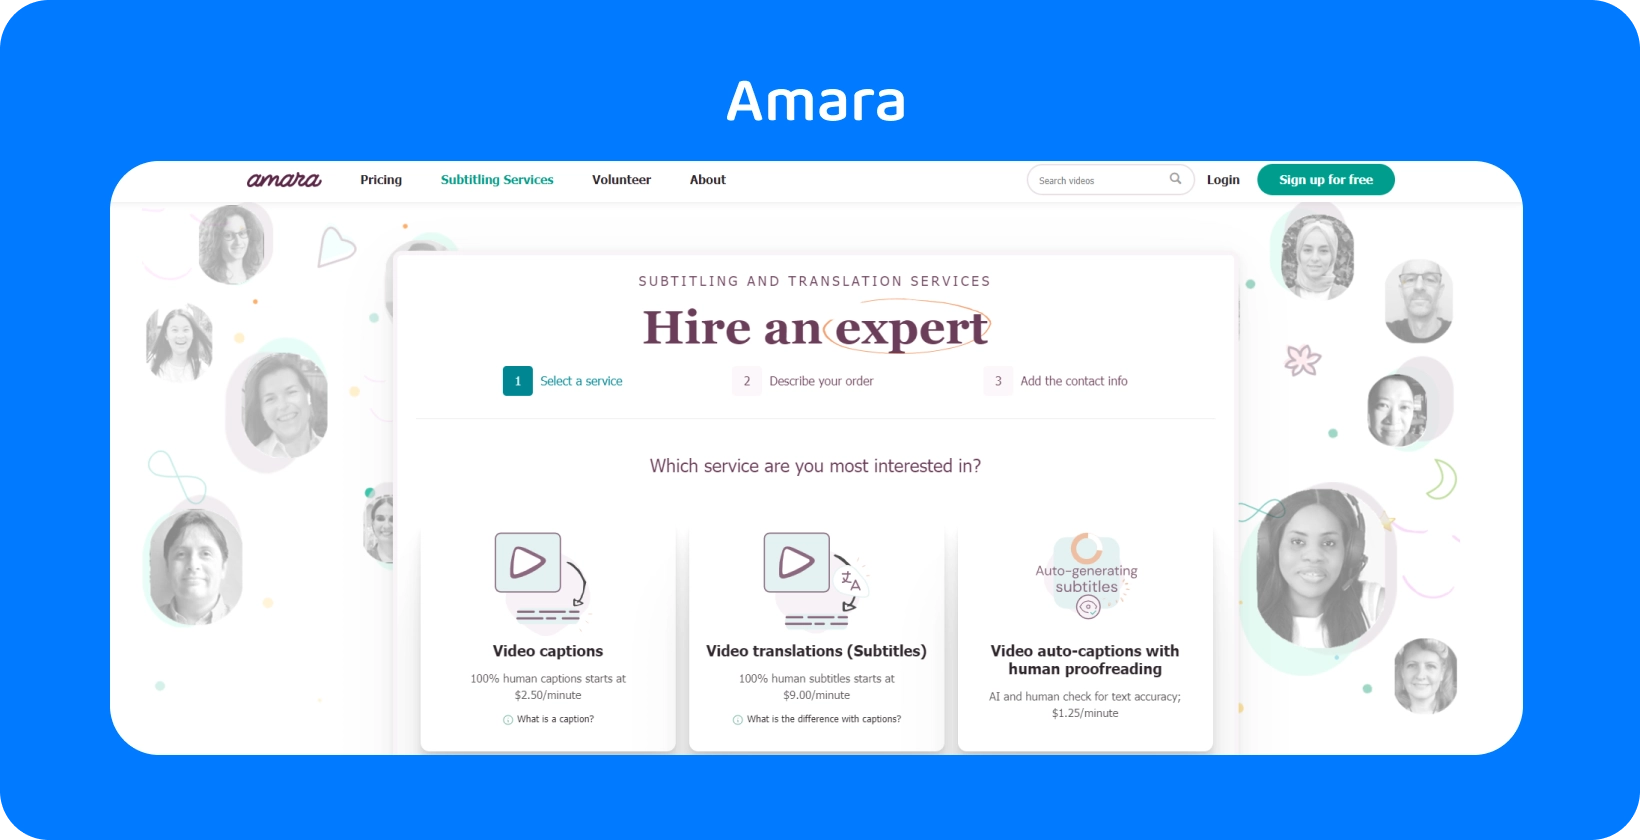 La página web de Amara muestra cómo agregar fácilmente subtítulos a videos en línea, mejorando la accesibilidad del espectador.